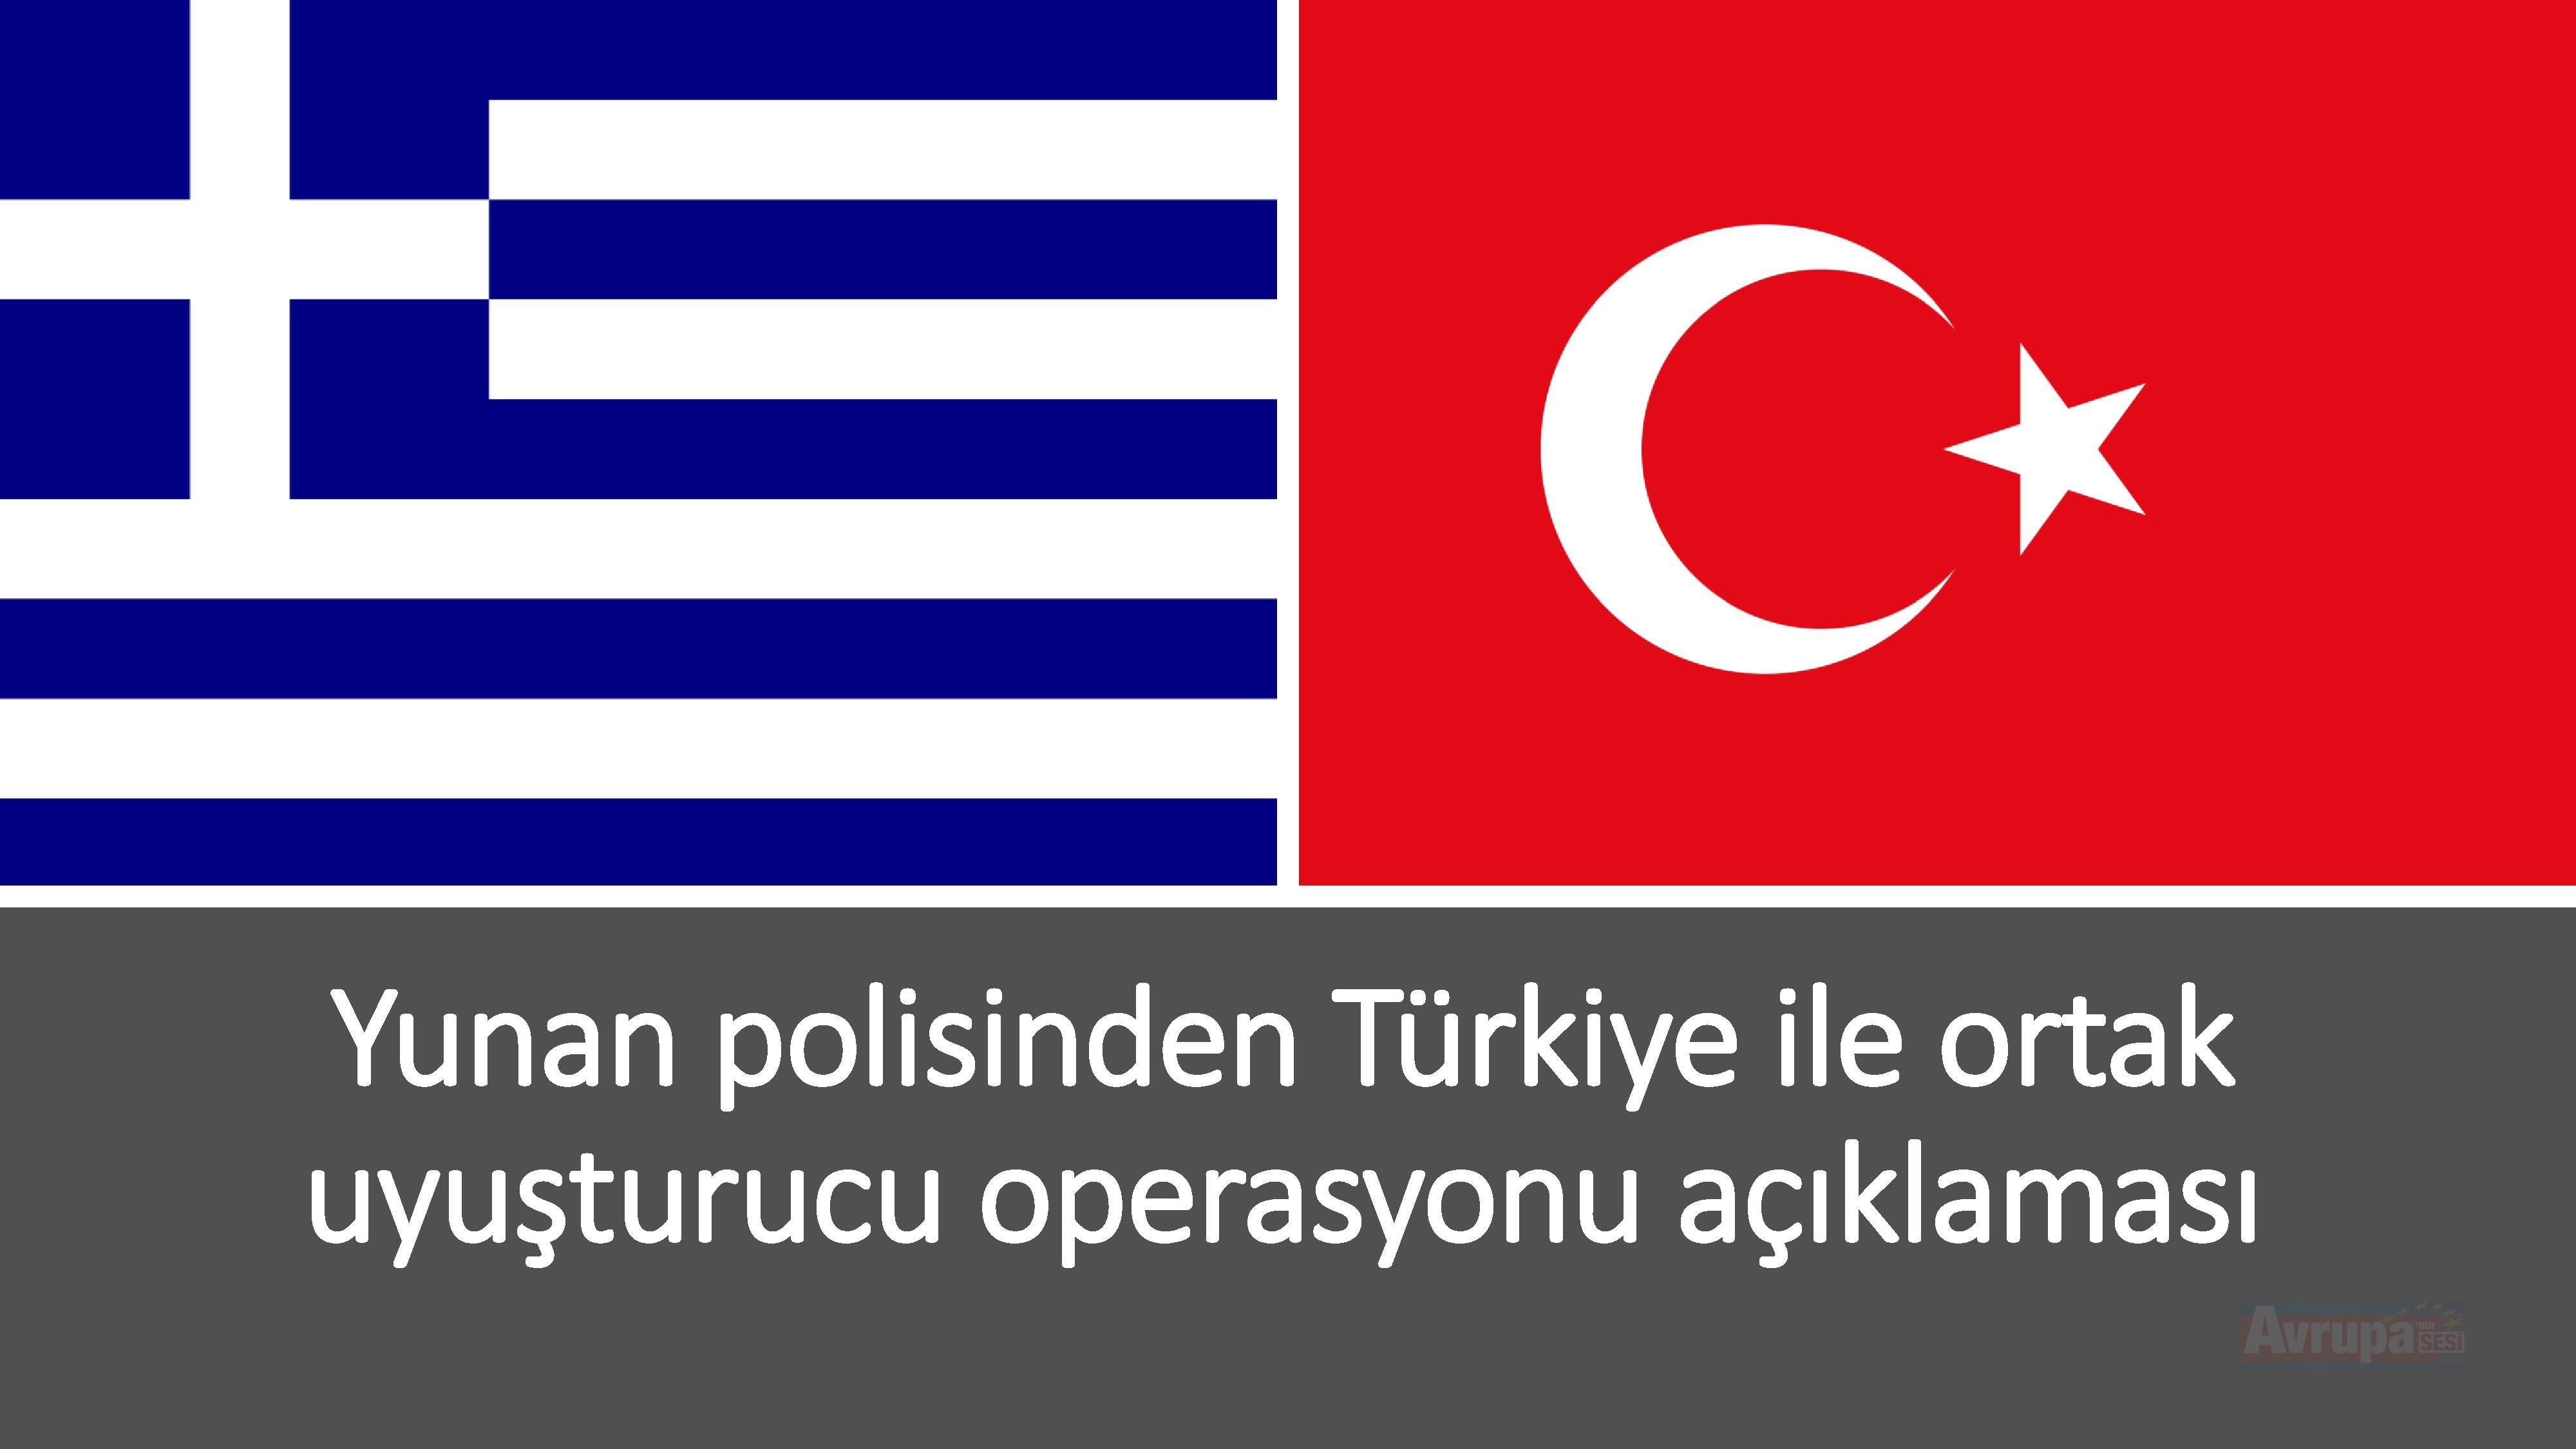 Yunan polisinden Türkiye ile ortak uyuşturucu operasyonu açıklaması